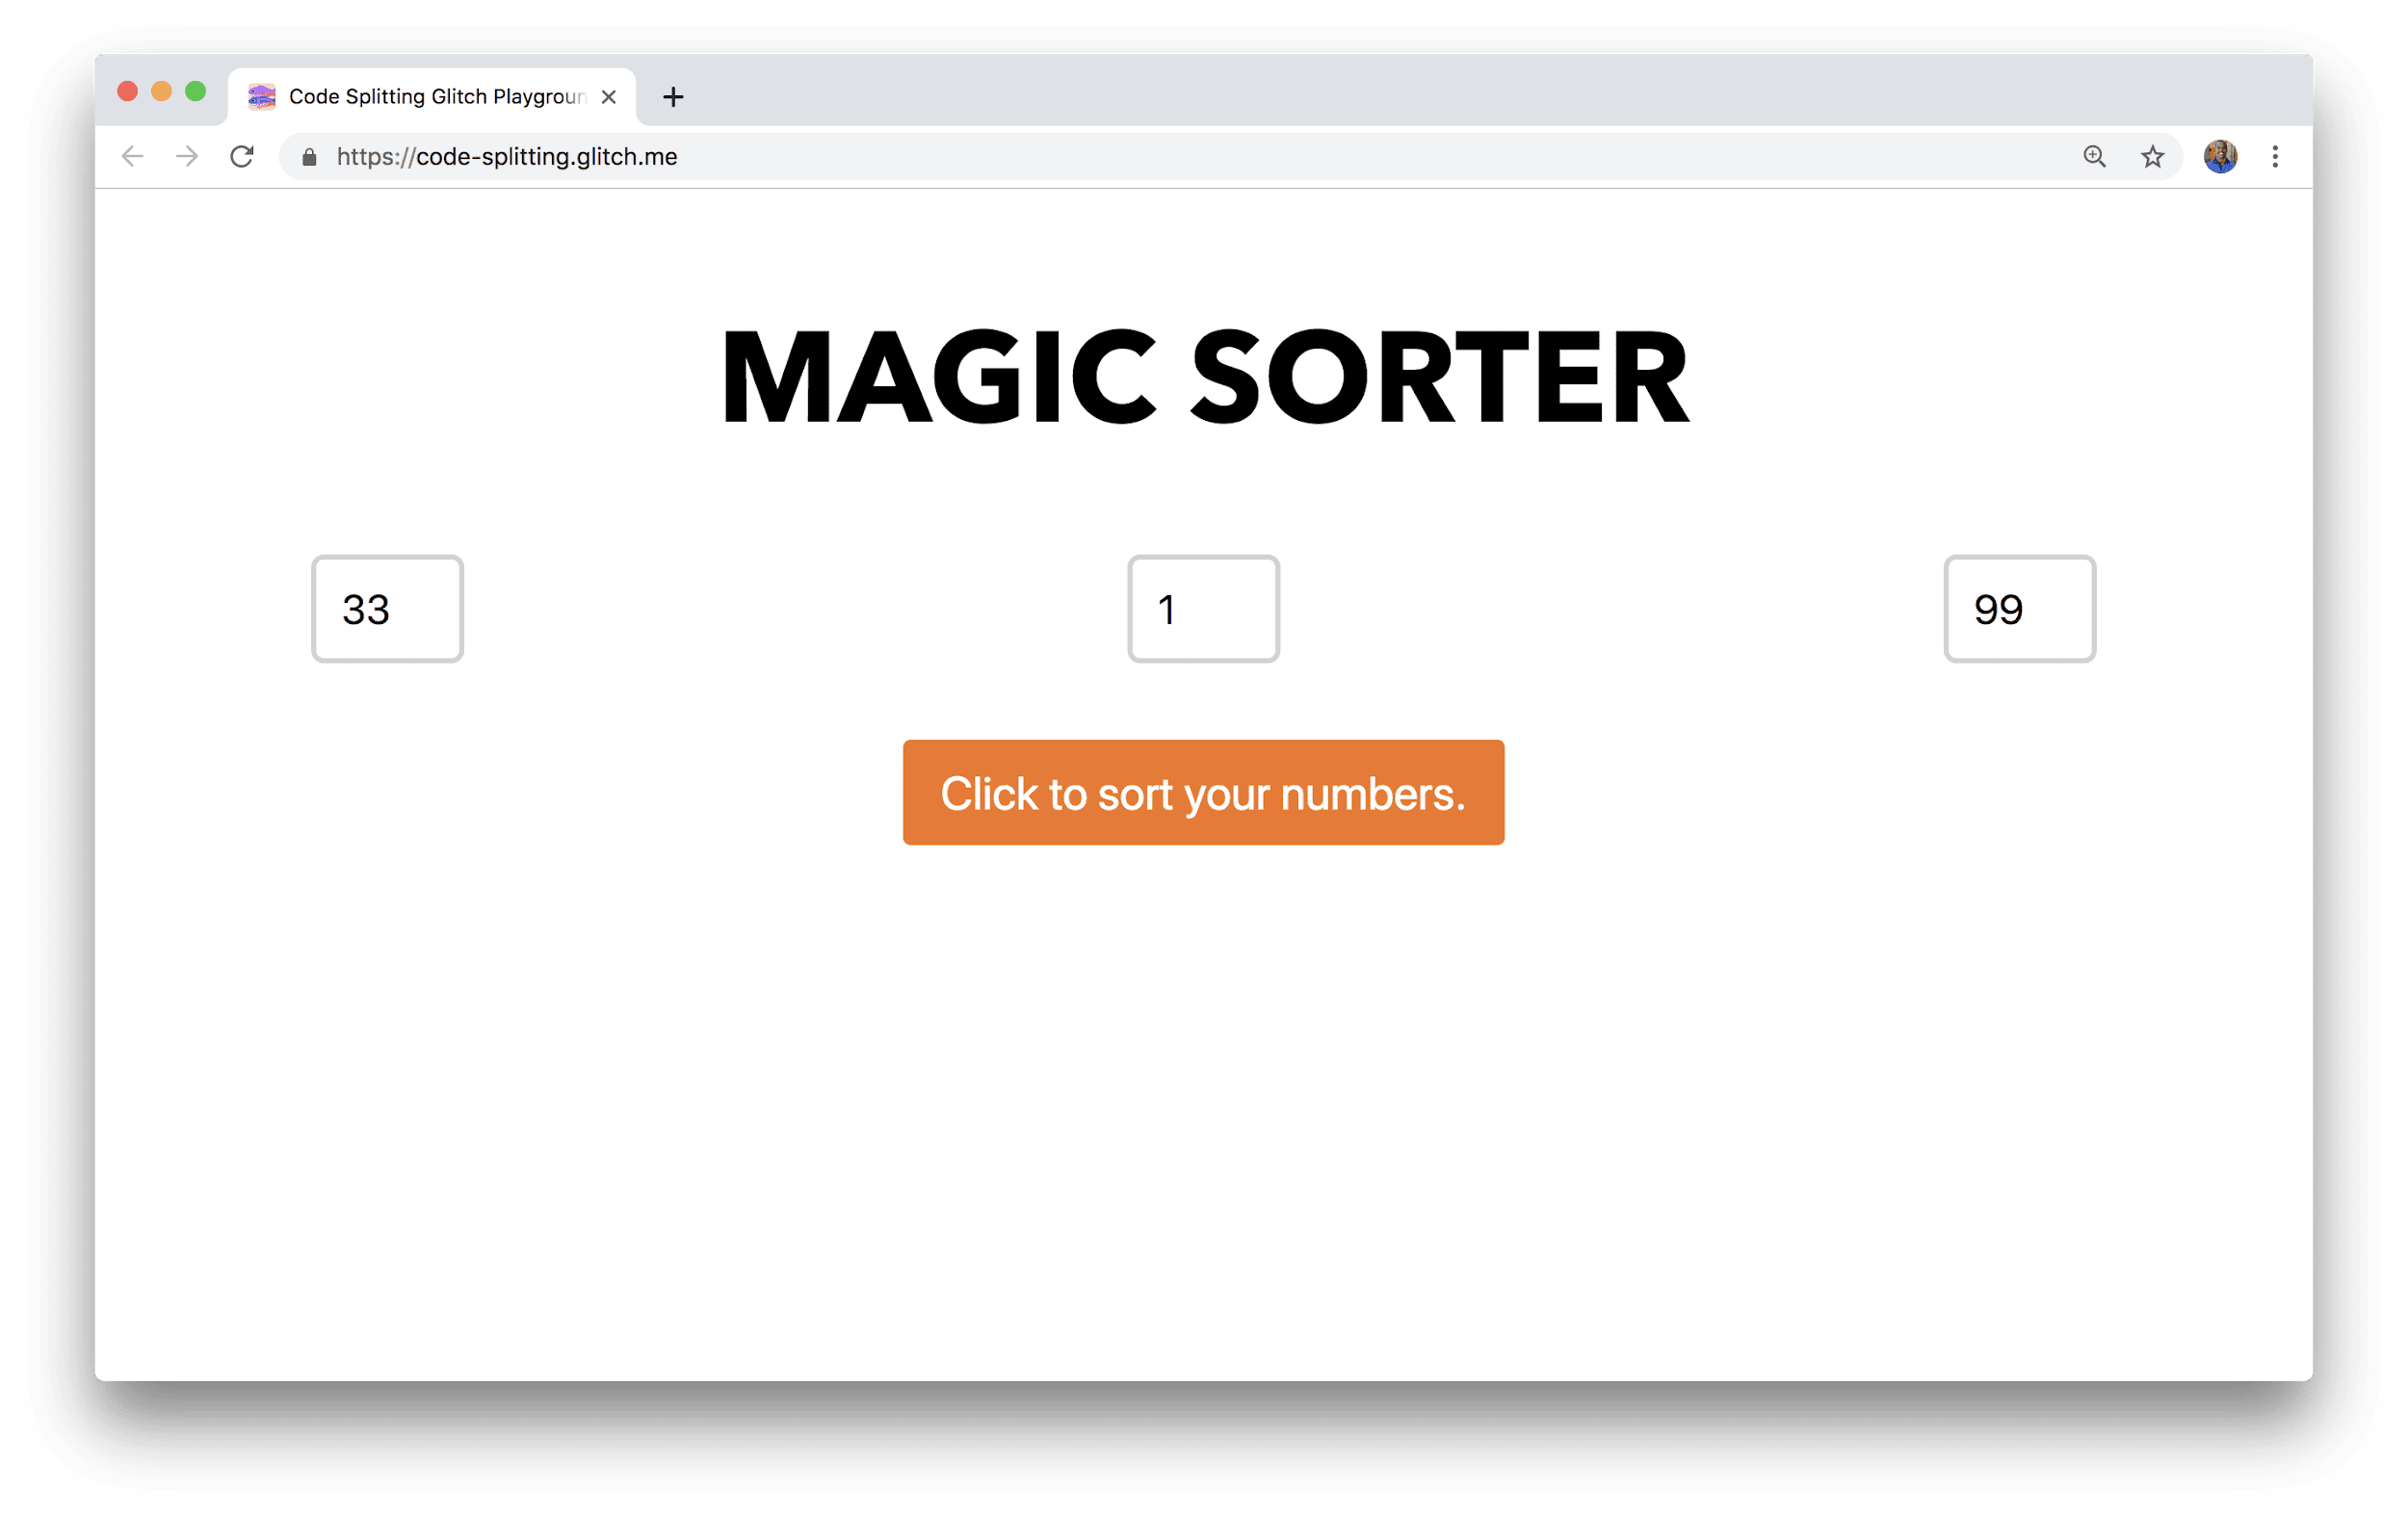 Una ventana del navegador muestra una aplicación titulada Ordenador mágico con tres campos para ingresar números y un botón para ordenar.